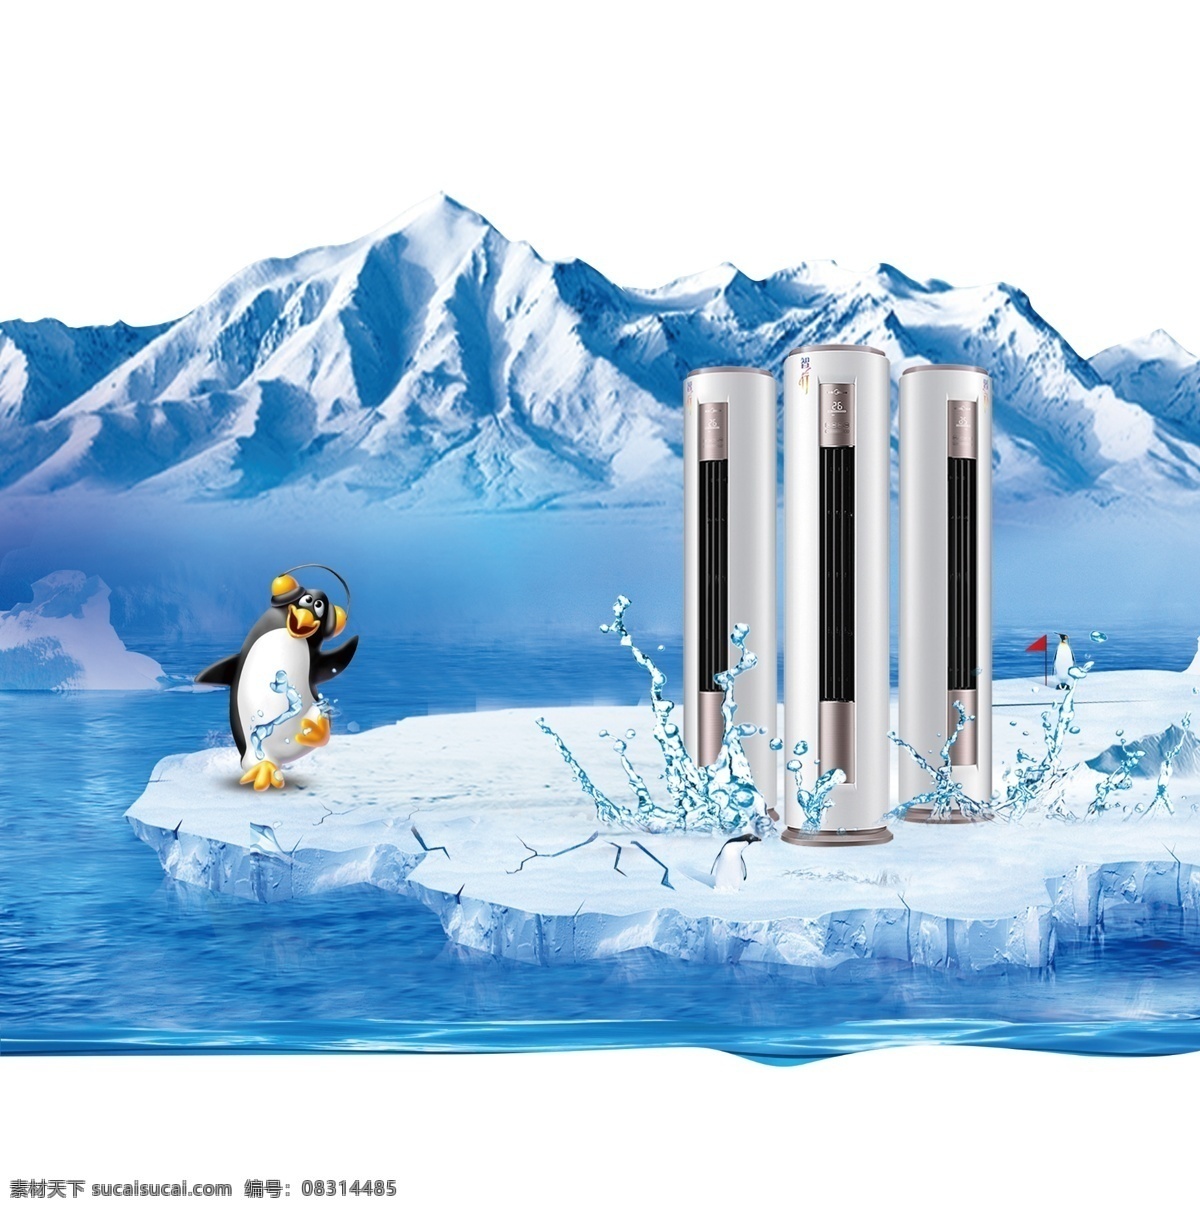 冰川 上 空调 柜机 促销 天猫 冰山 清凉 空调柜机 家装节 家装购物 淘宝